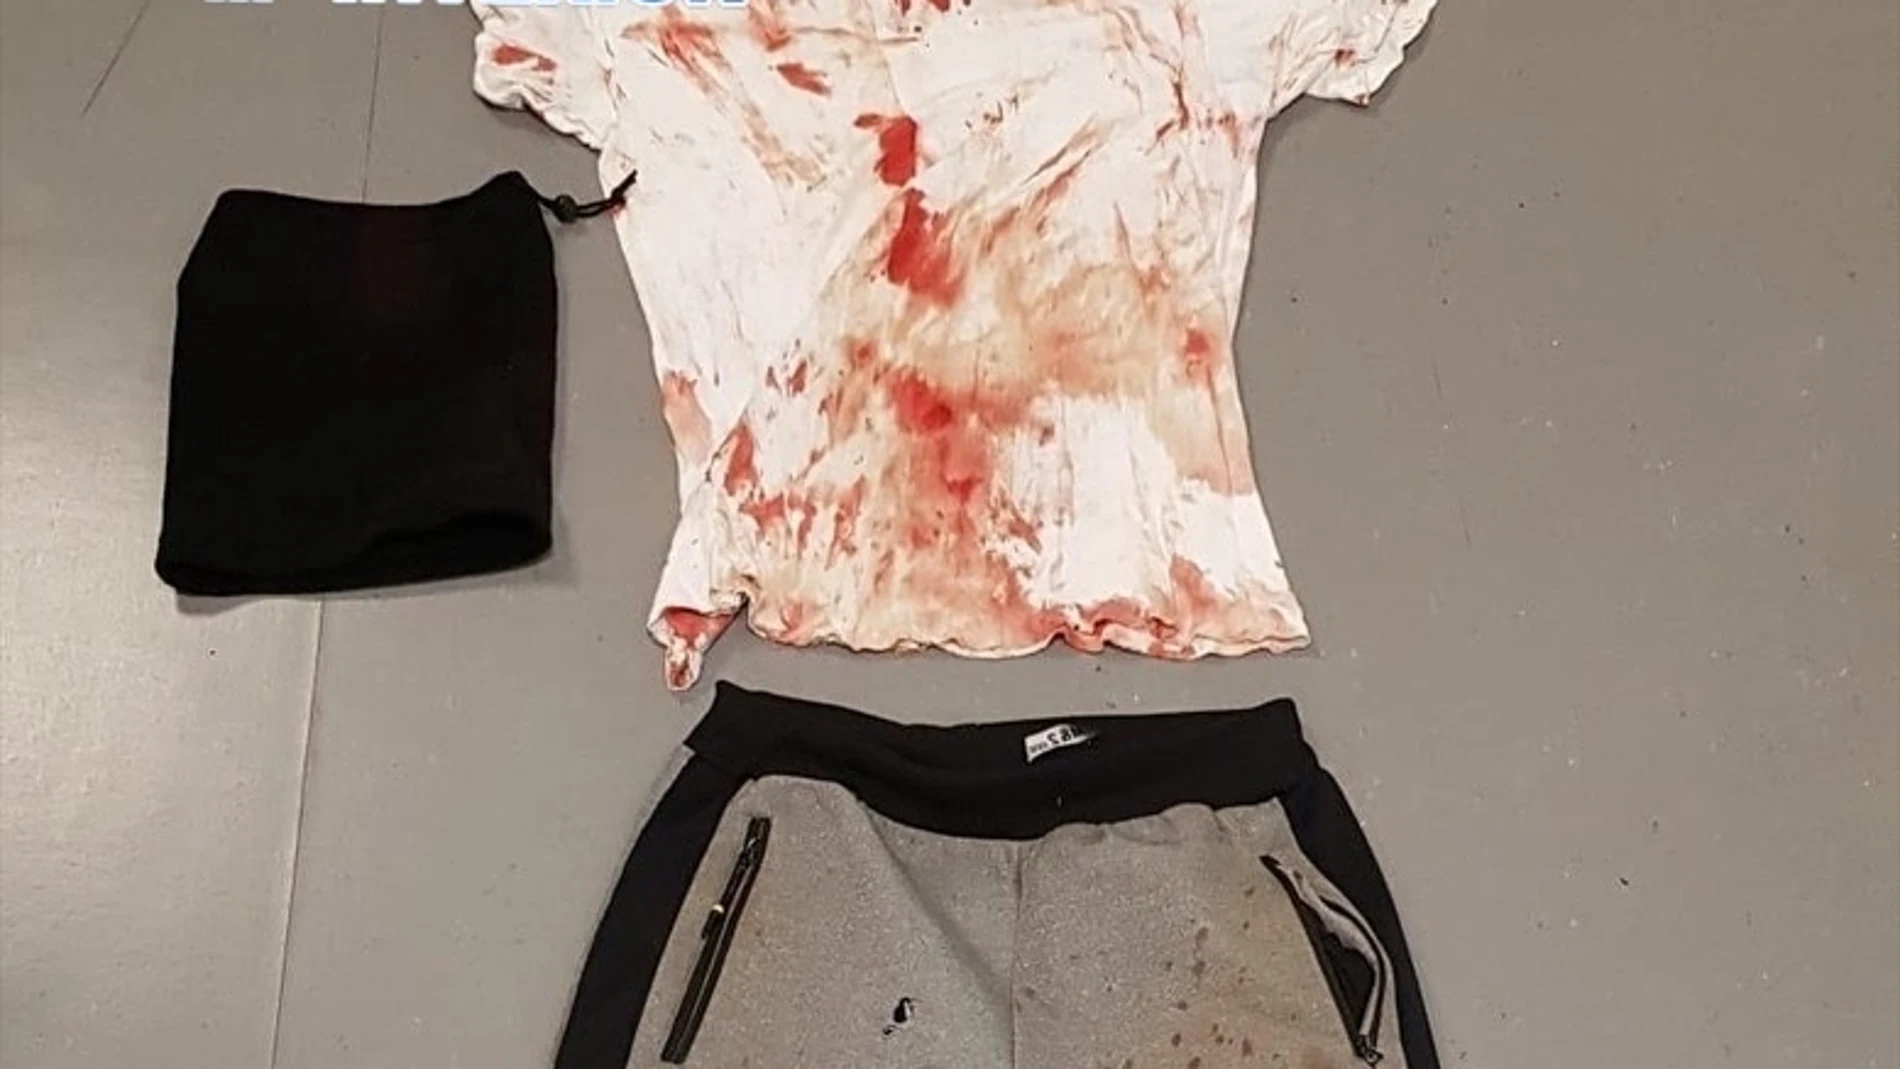 Imagen de la ropa usada por el asaltanteImagen de la ropa usada por el asaltante12/20/2019